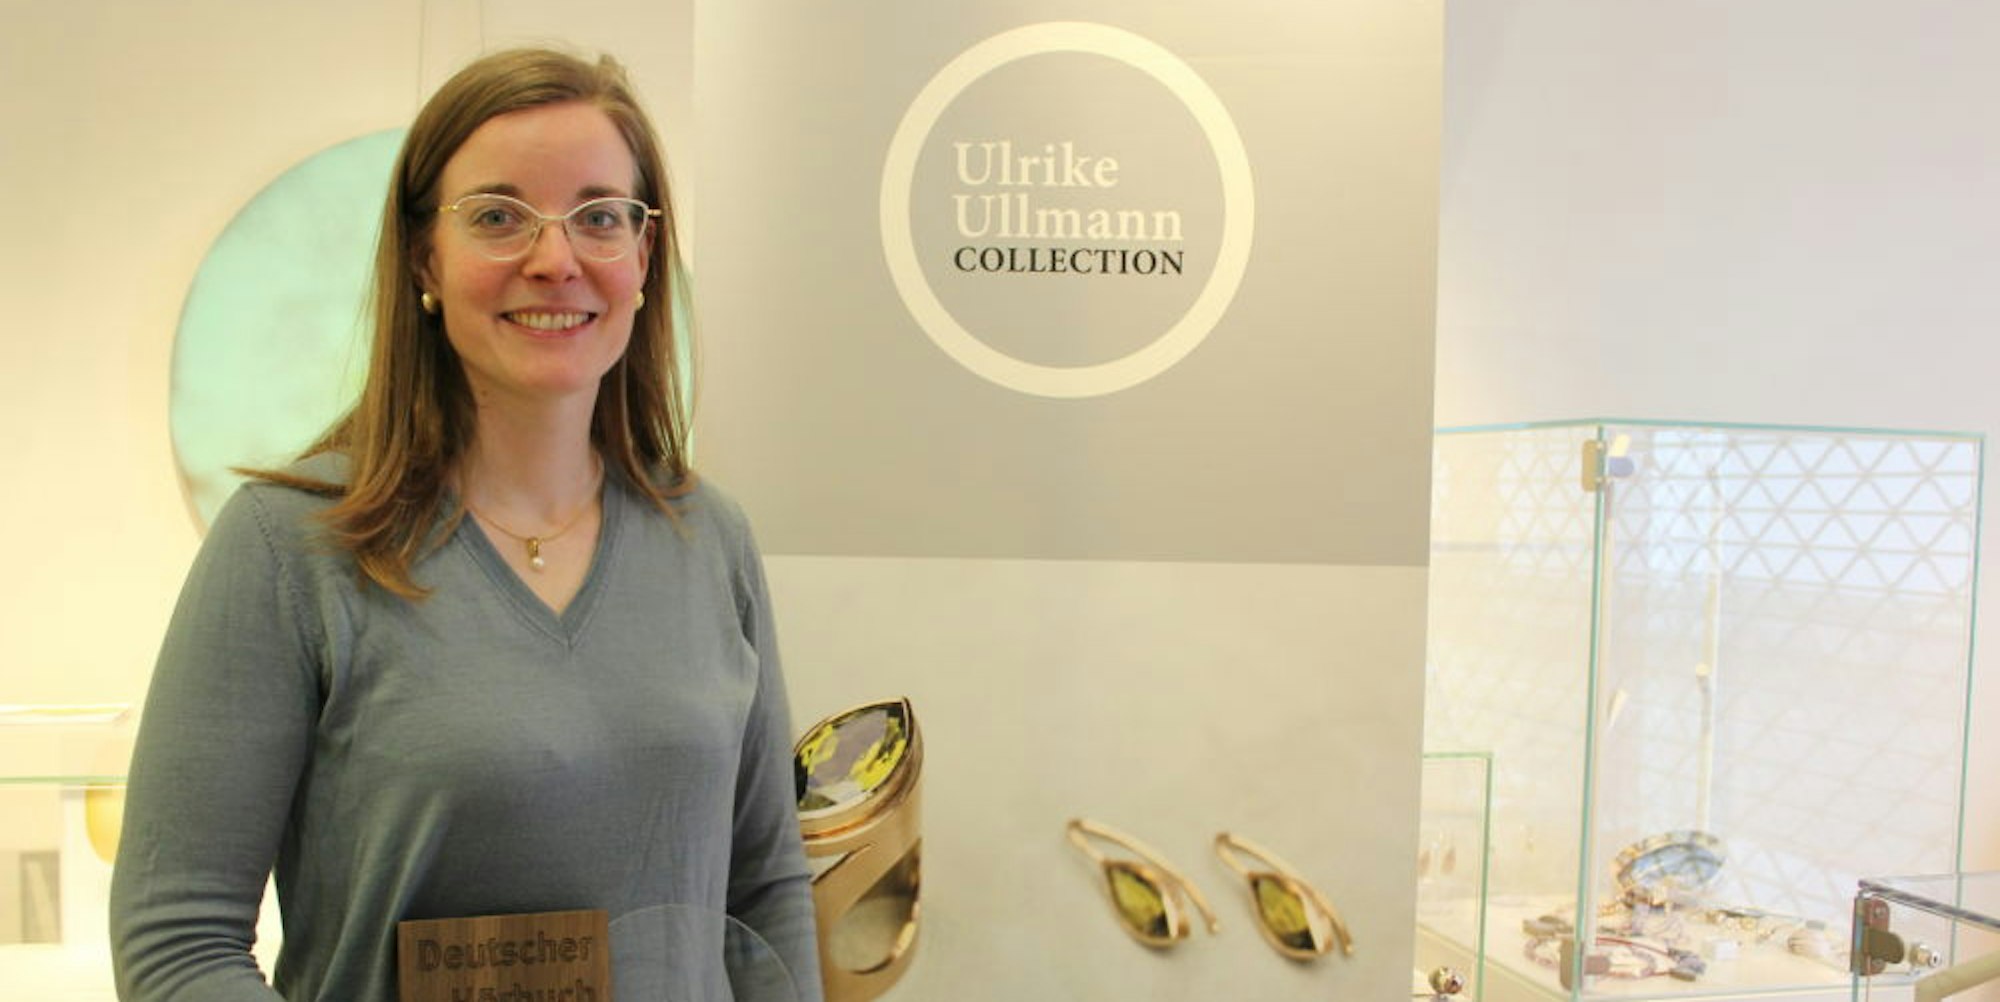 Ulrike Ullmann hat die Trophäe für den Deutschen Hörbuchpreis entworfen.